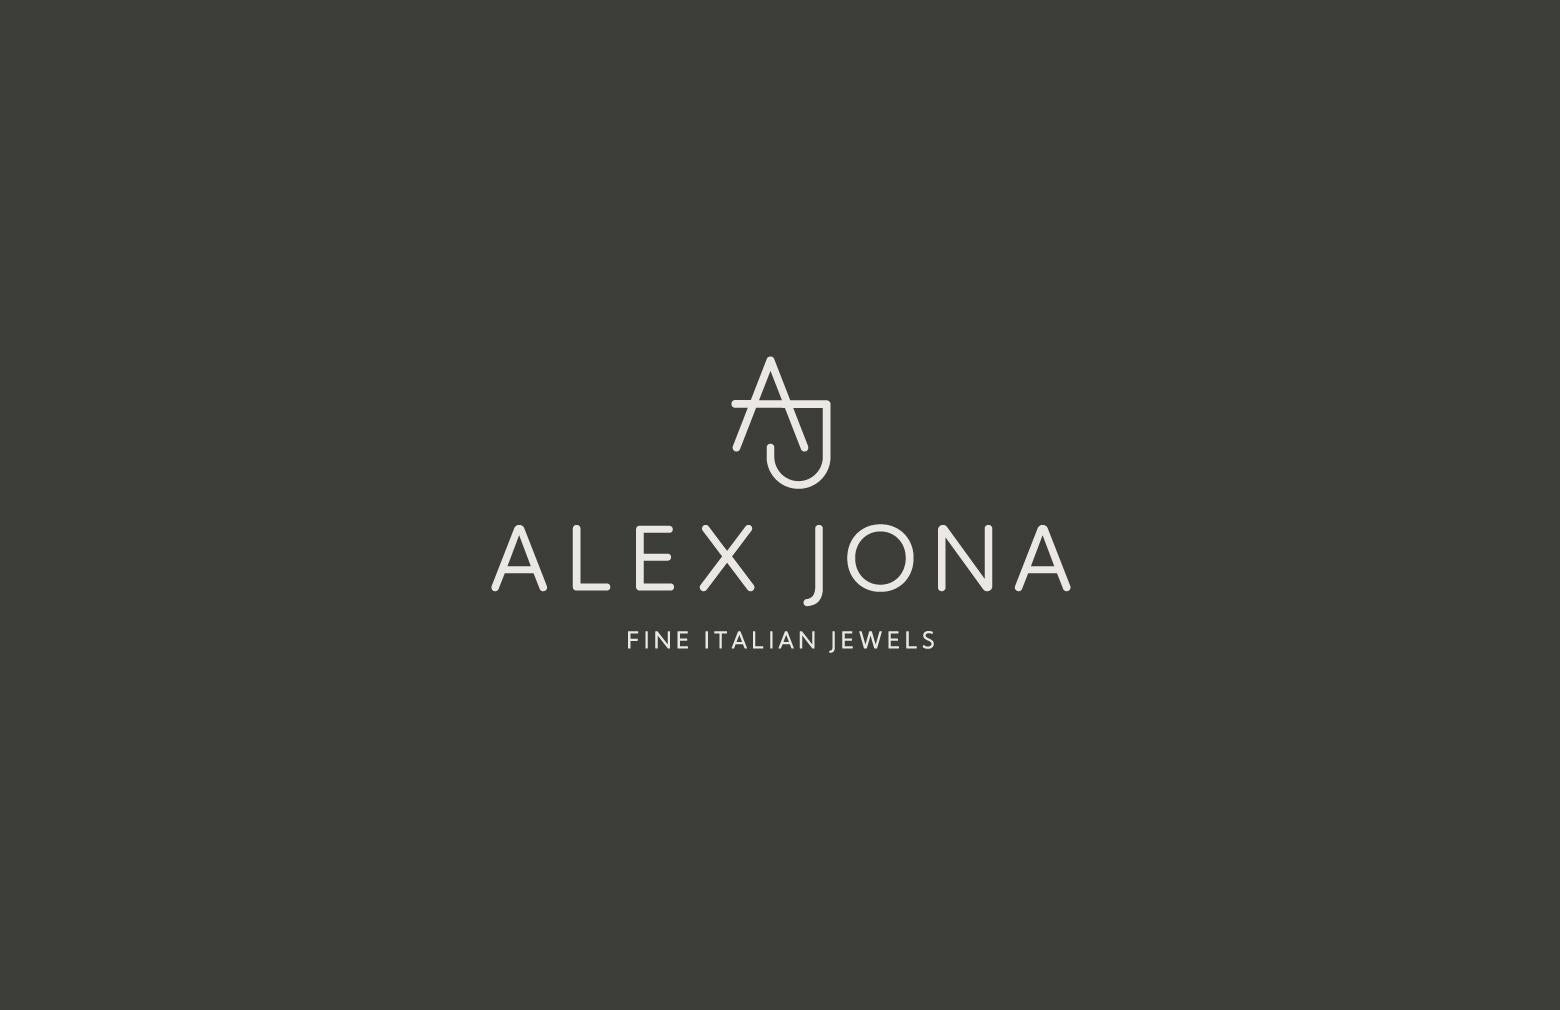 Alex Jona Tennis Racket Sterling Silver Cufflinks For Sale 6